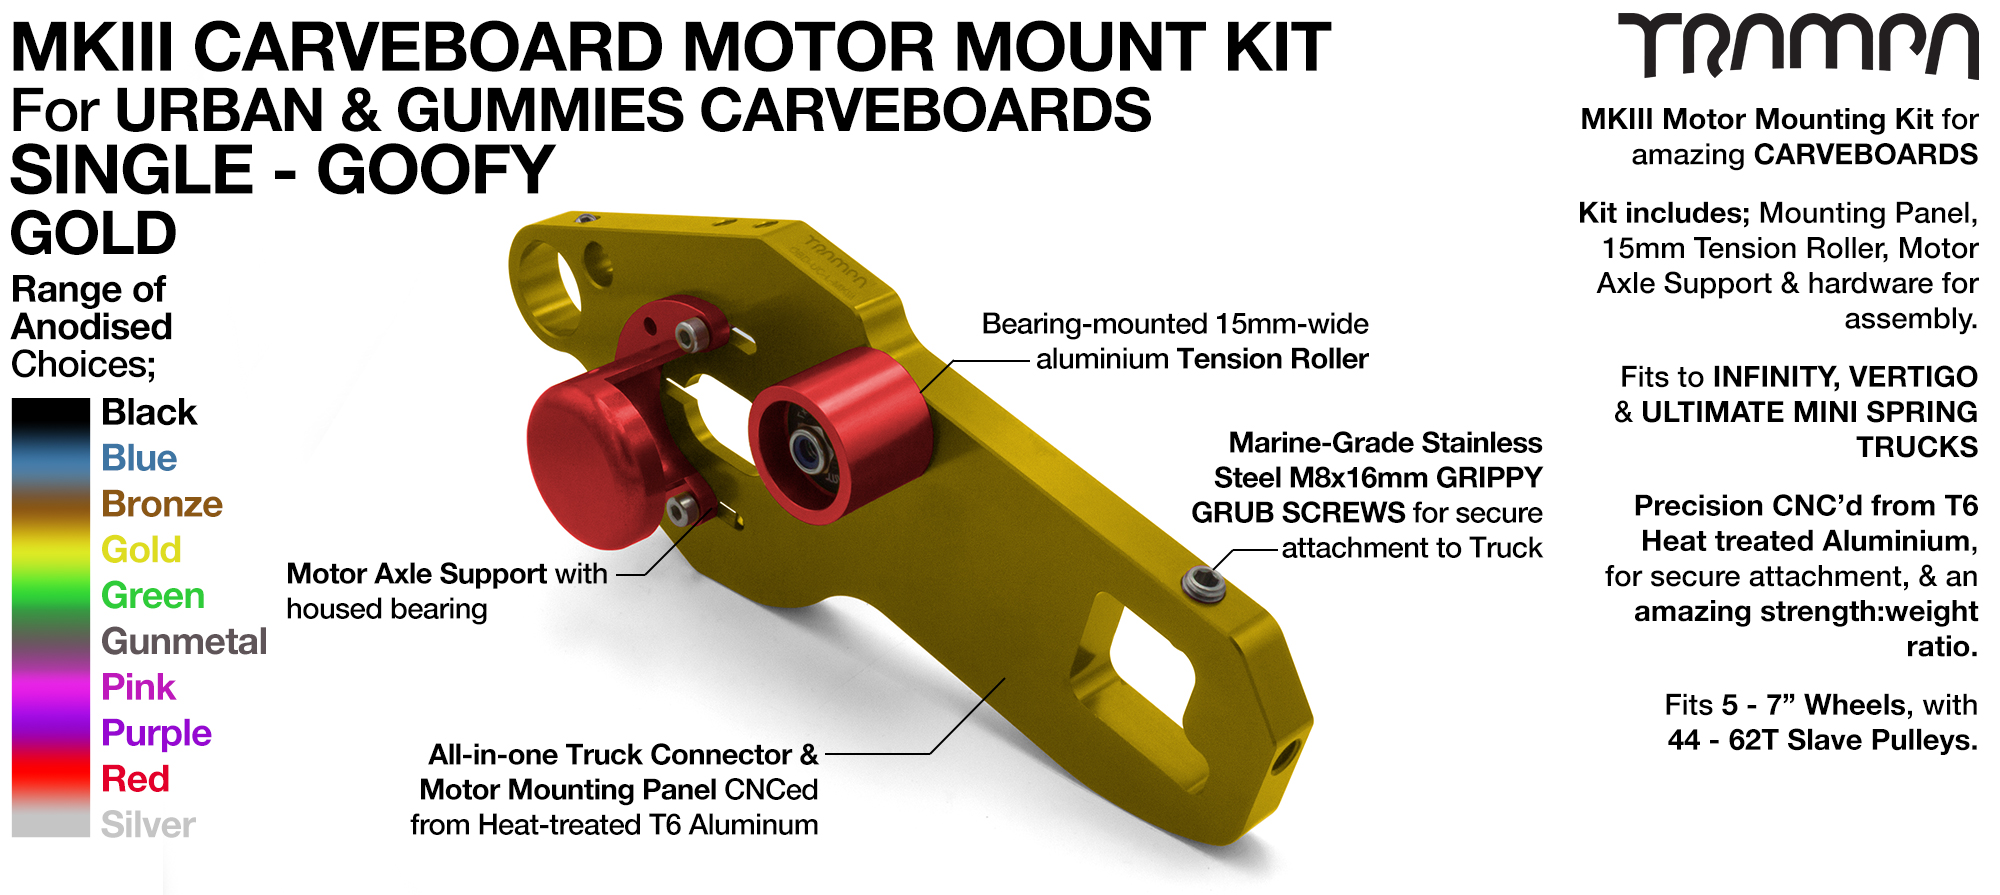 Mk III CARVE BOARD Motor Mount Kit - SINGLE GOLD